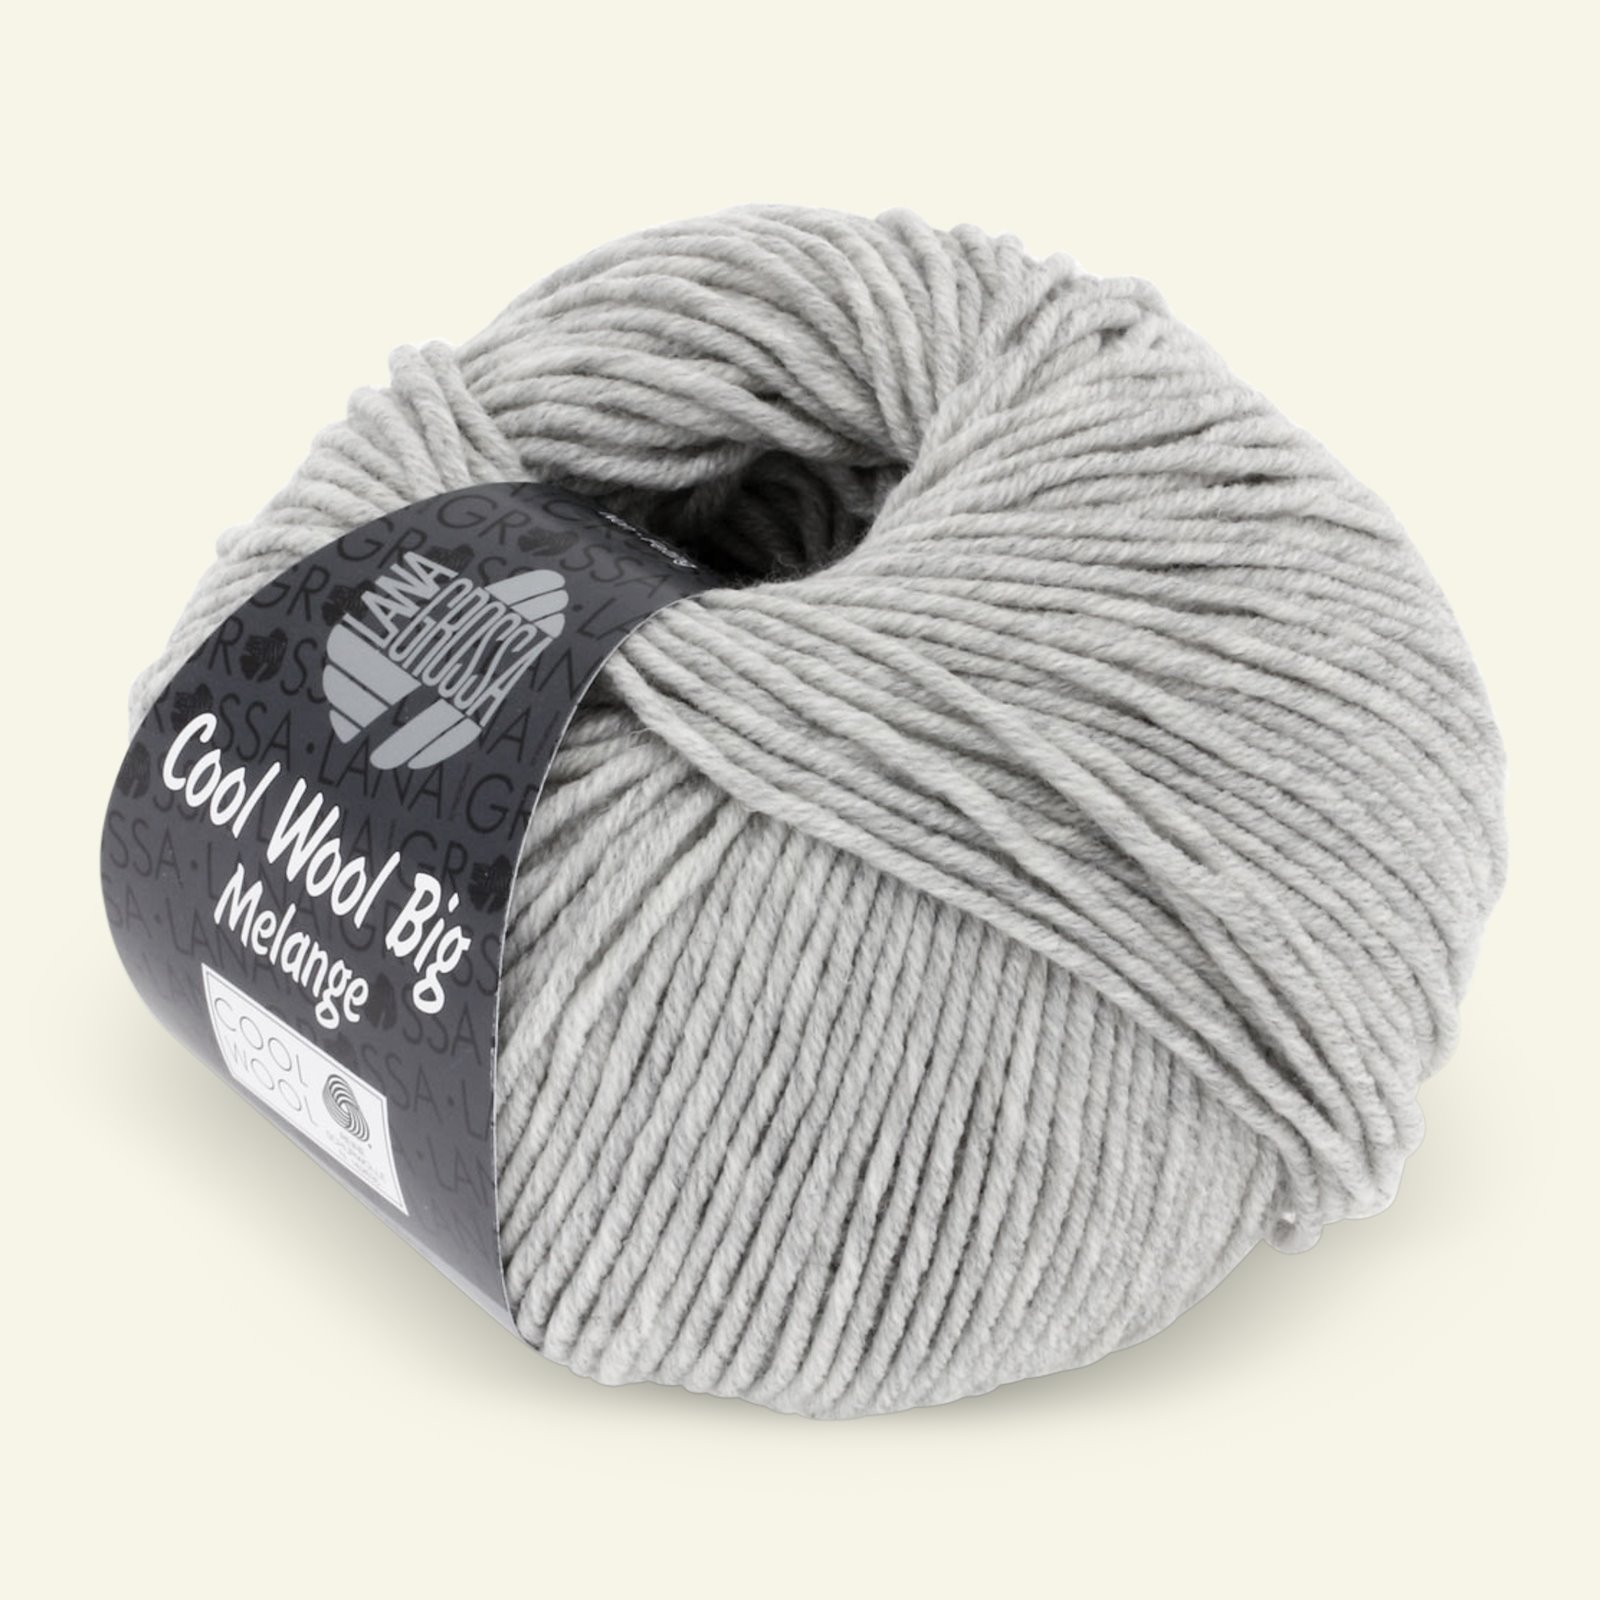 Lana Grossa, extrafin merinouldgarn "Cool Wool Big", lys grå mel. 90001085_pack